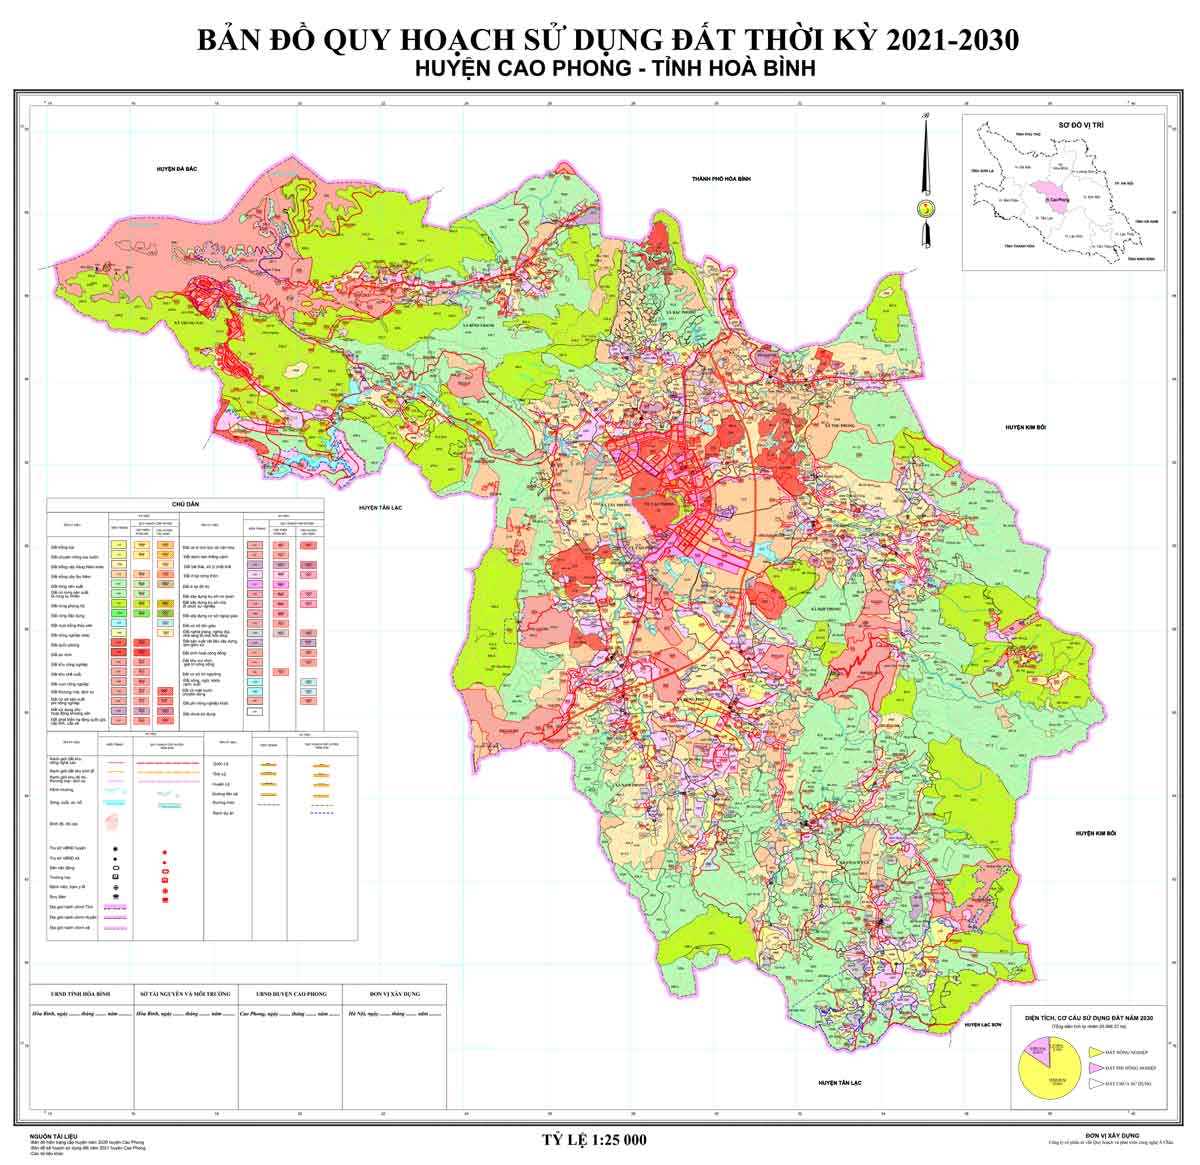 Bản đồ QHSDĐ huyện Cao Phong đến năm 2030